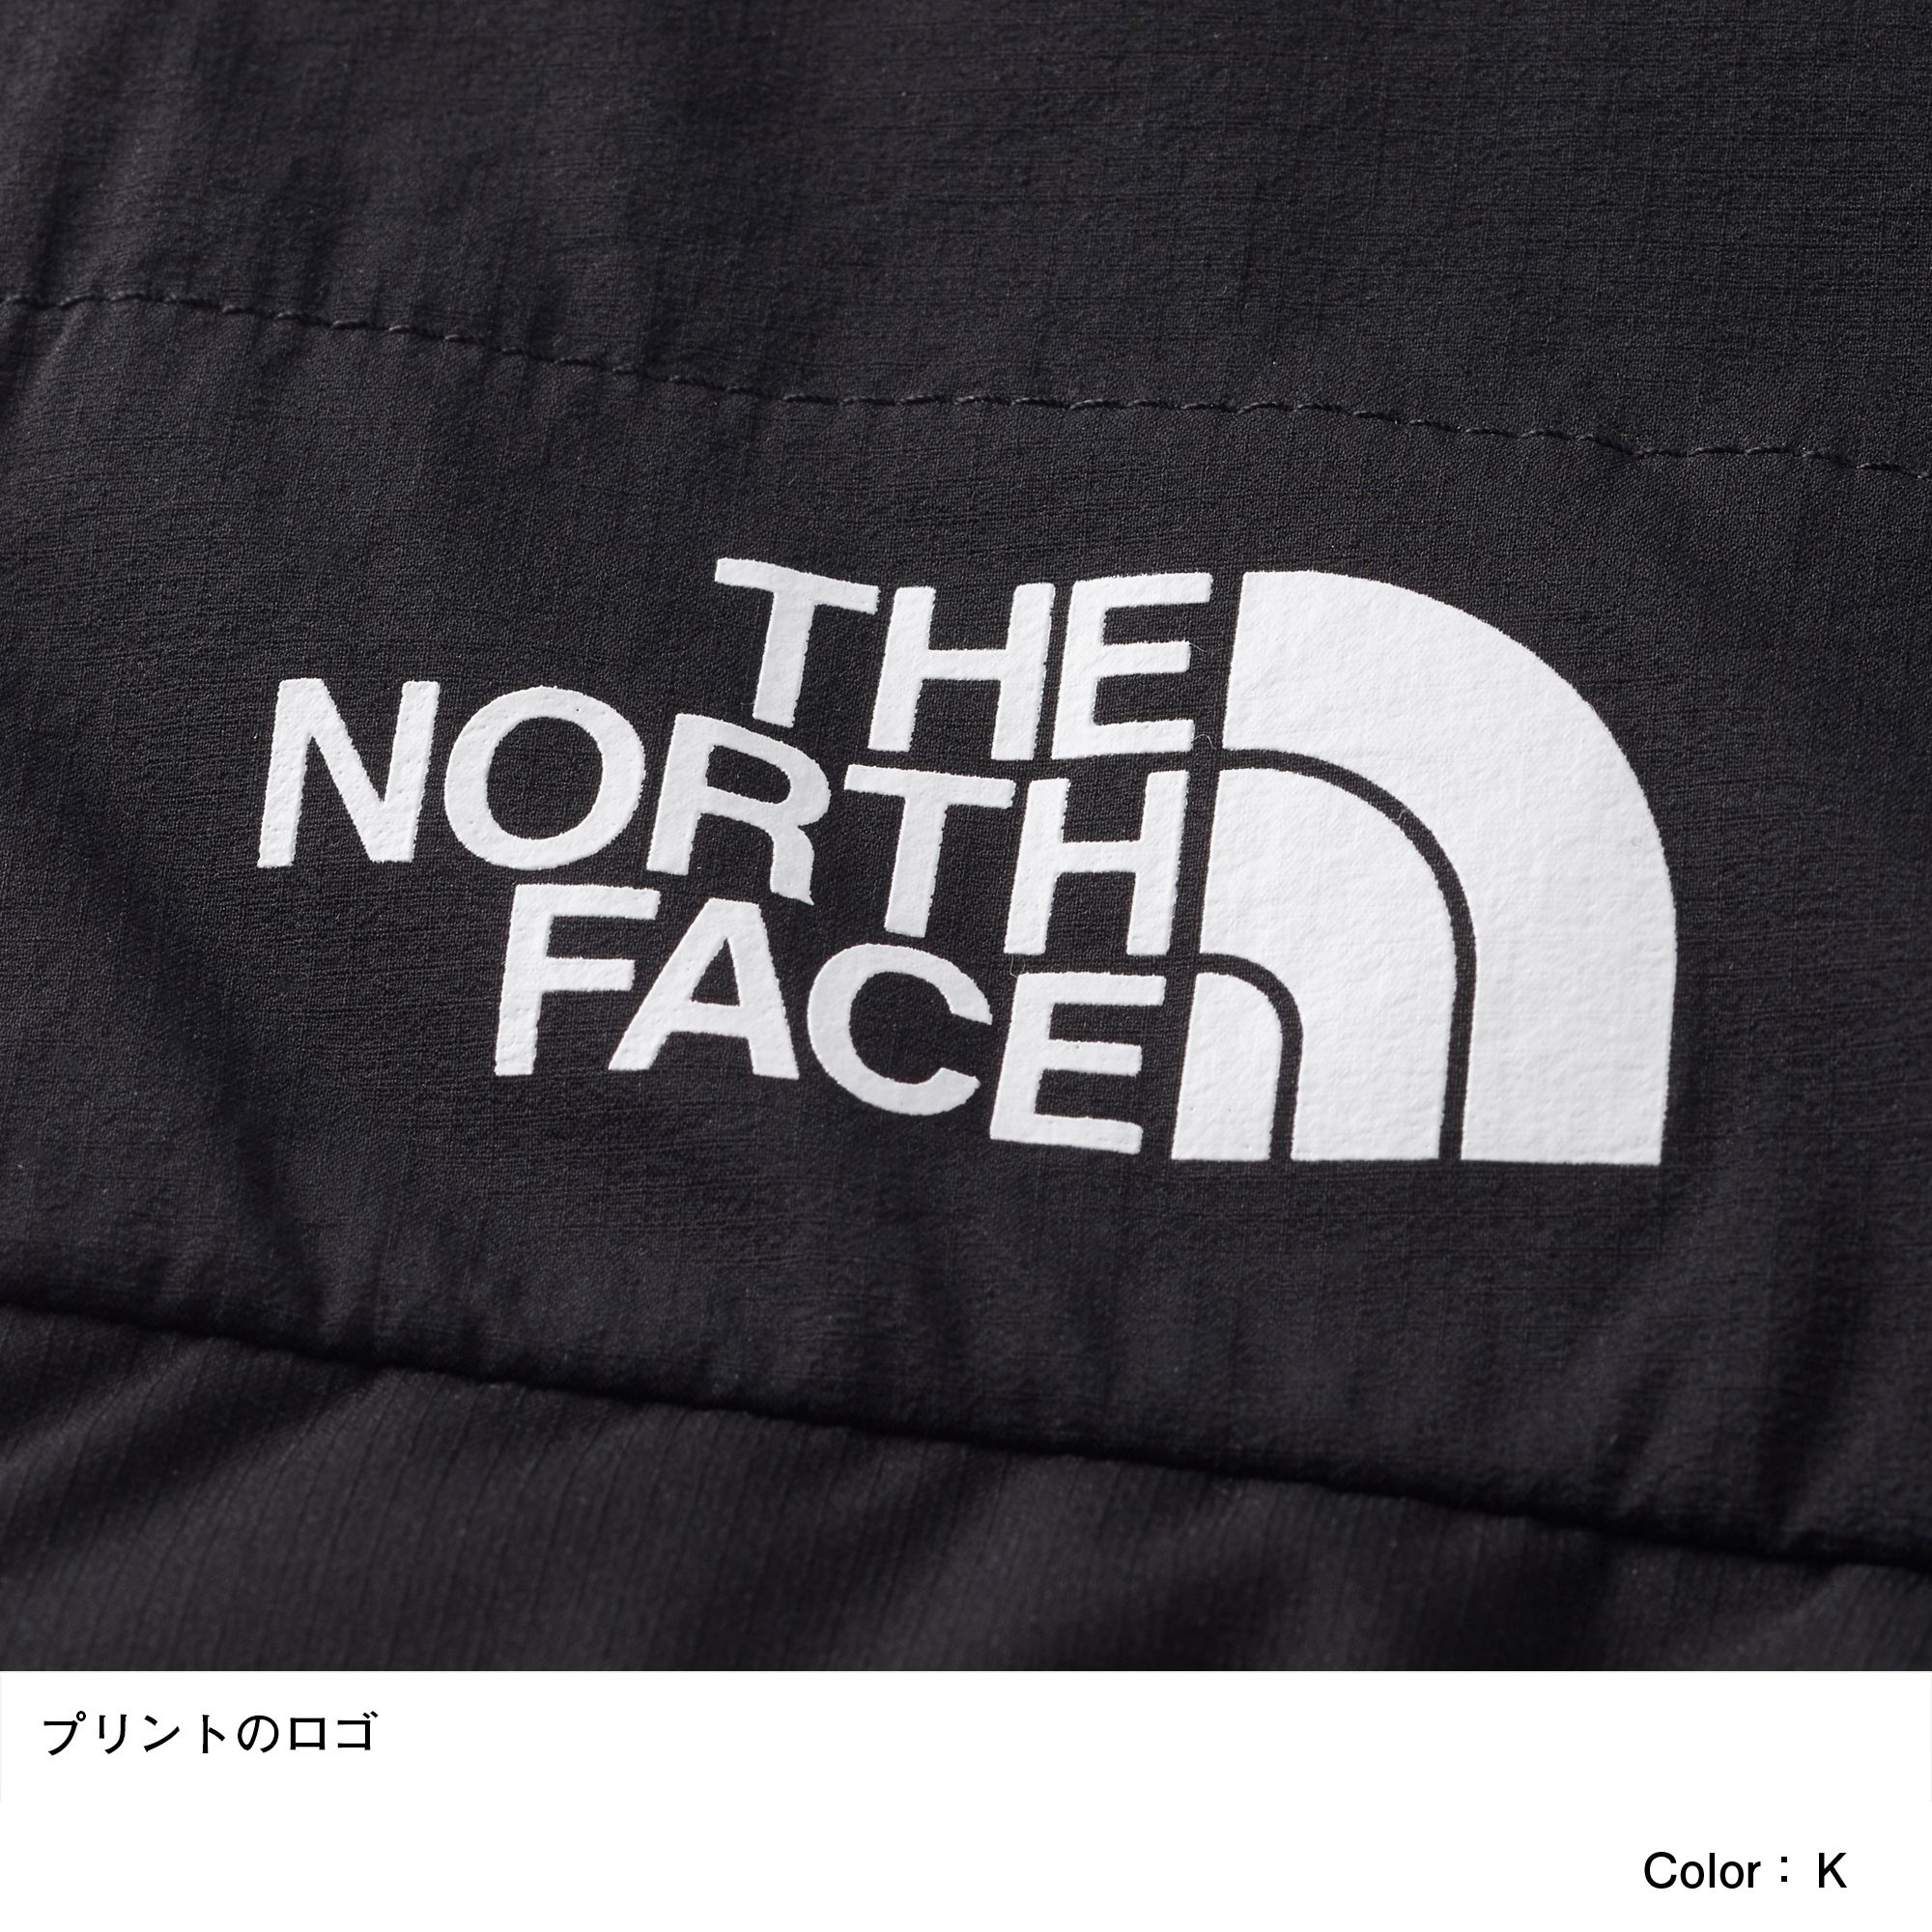 L3 50 50 ダウン パンツ メンズ Nd523 The North Face ザ ノース フェイス 公式通販